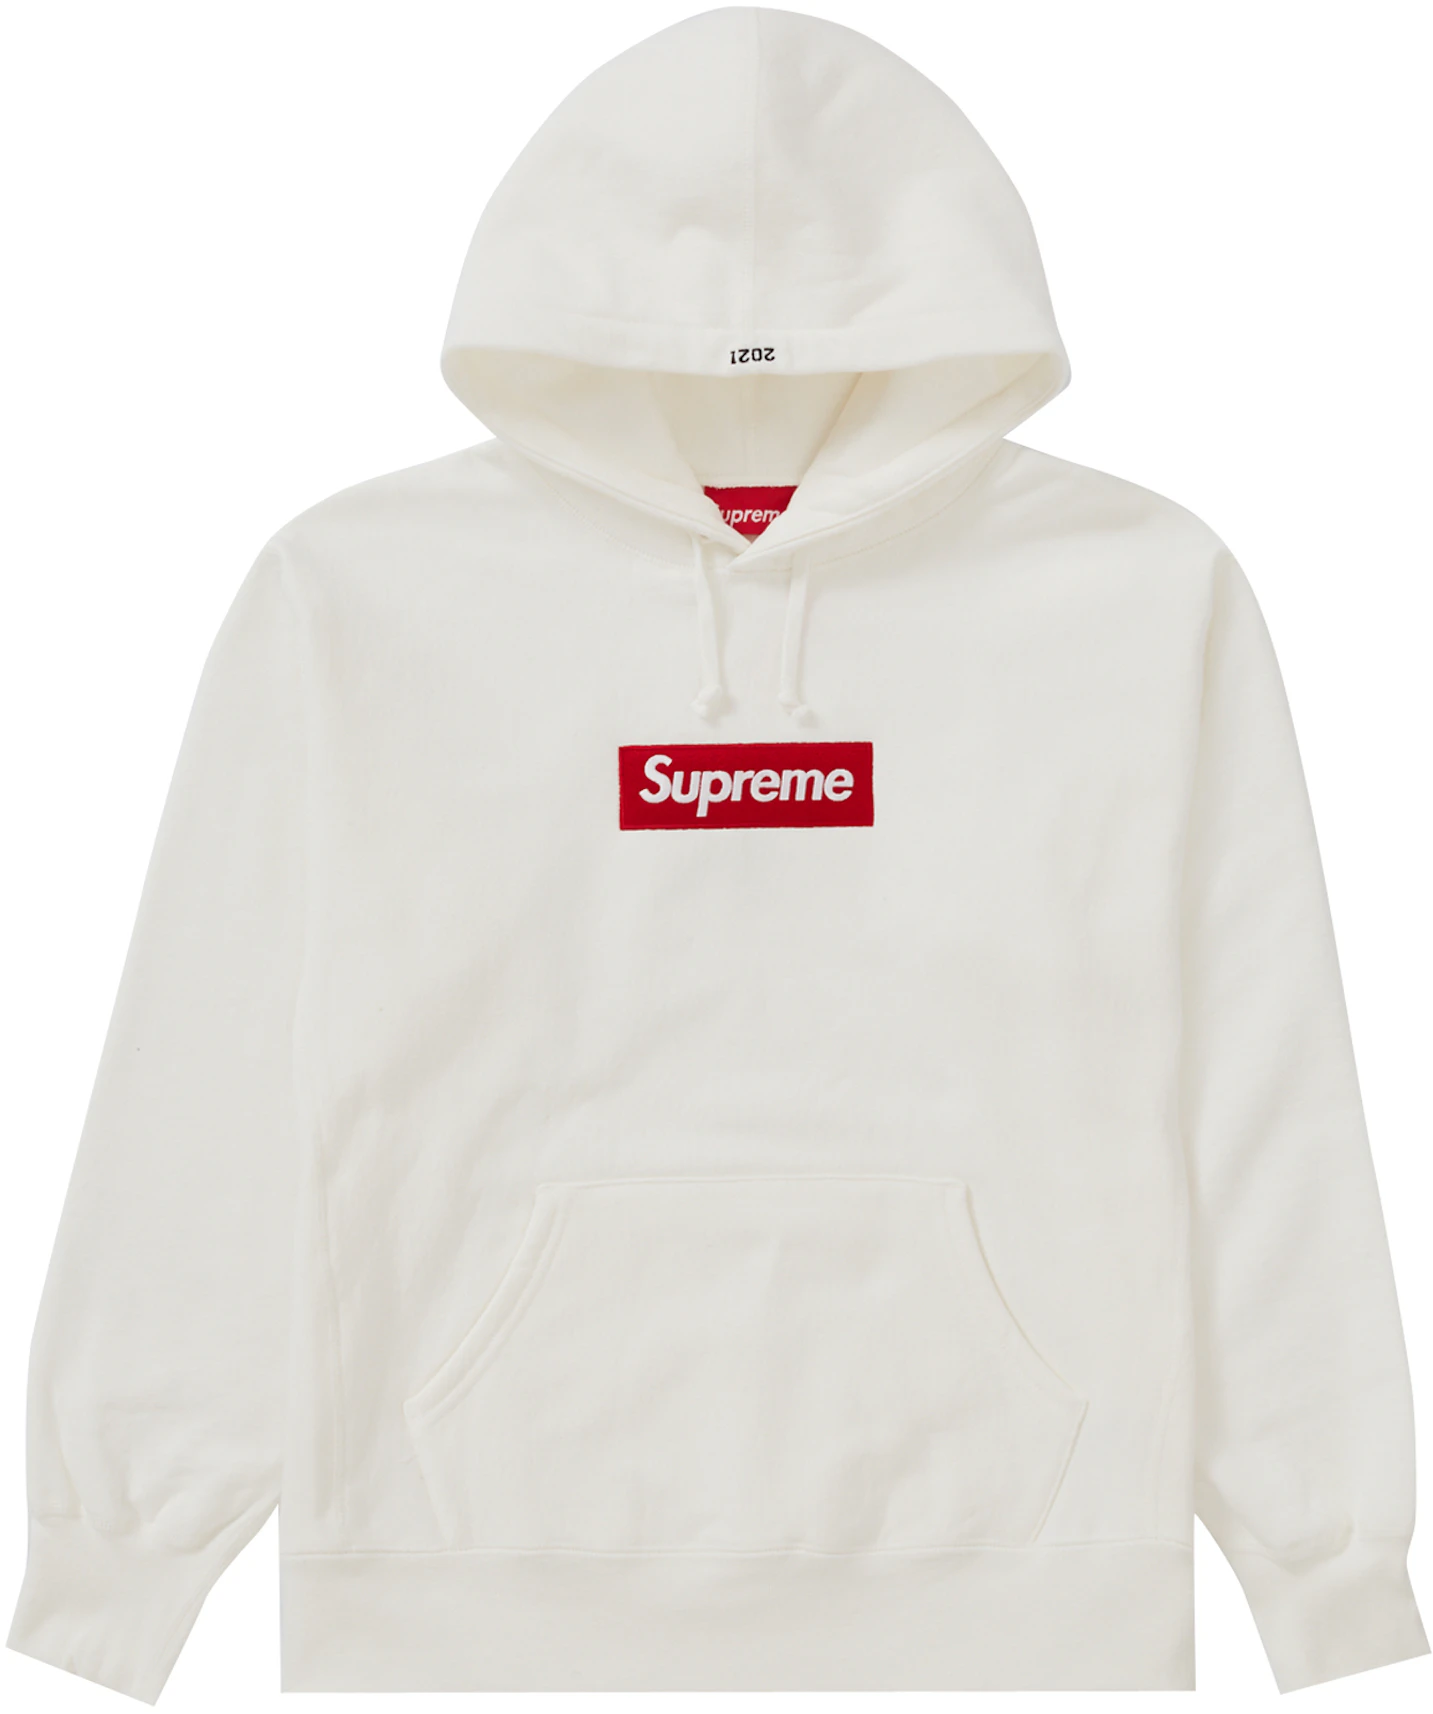 Comprar Tops/Sweatshirts de Supreme -